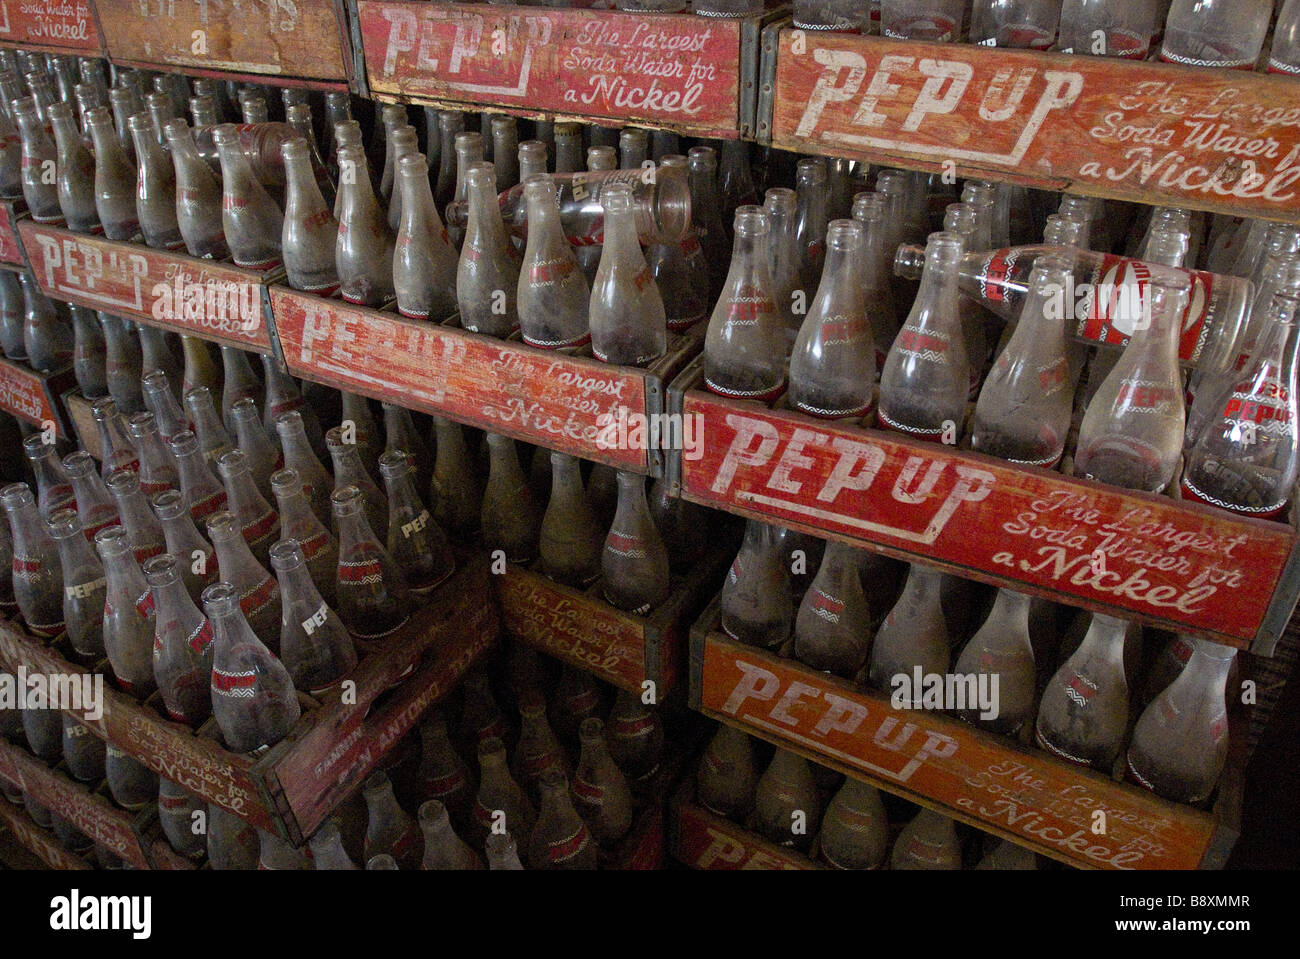 Pep hasta botellas de soda en cajones de madera en el mercado de las pulgas en Canton, Texas. Foto de stock